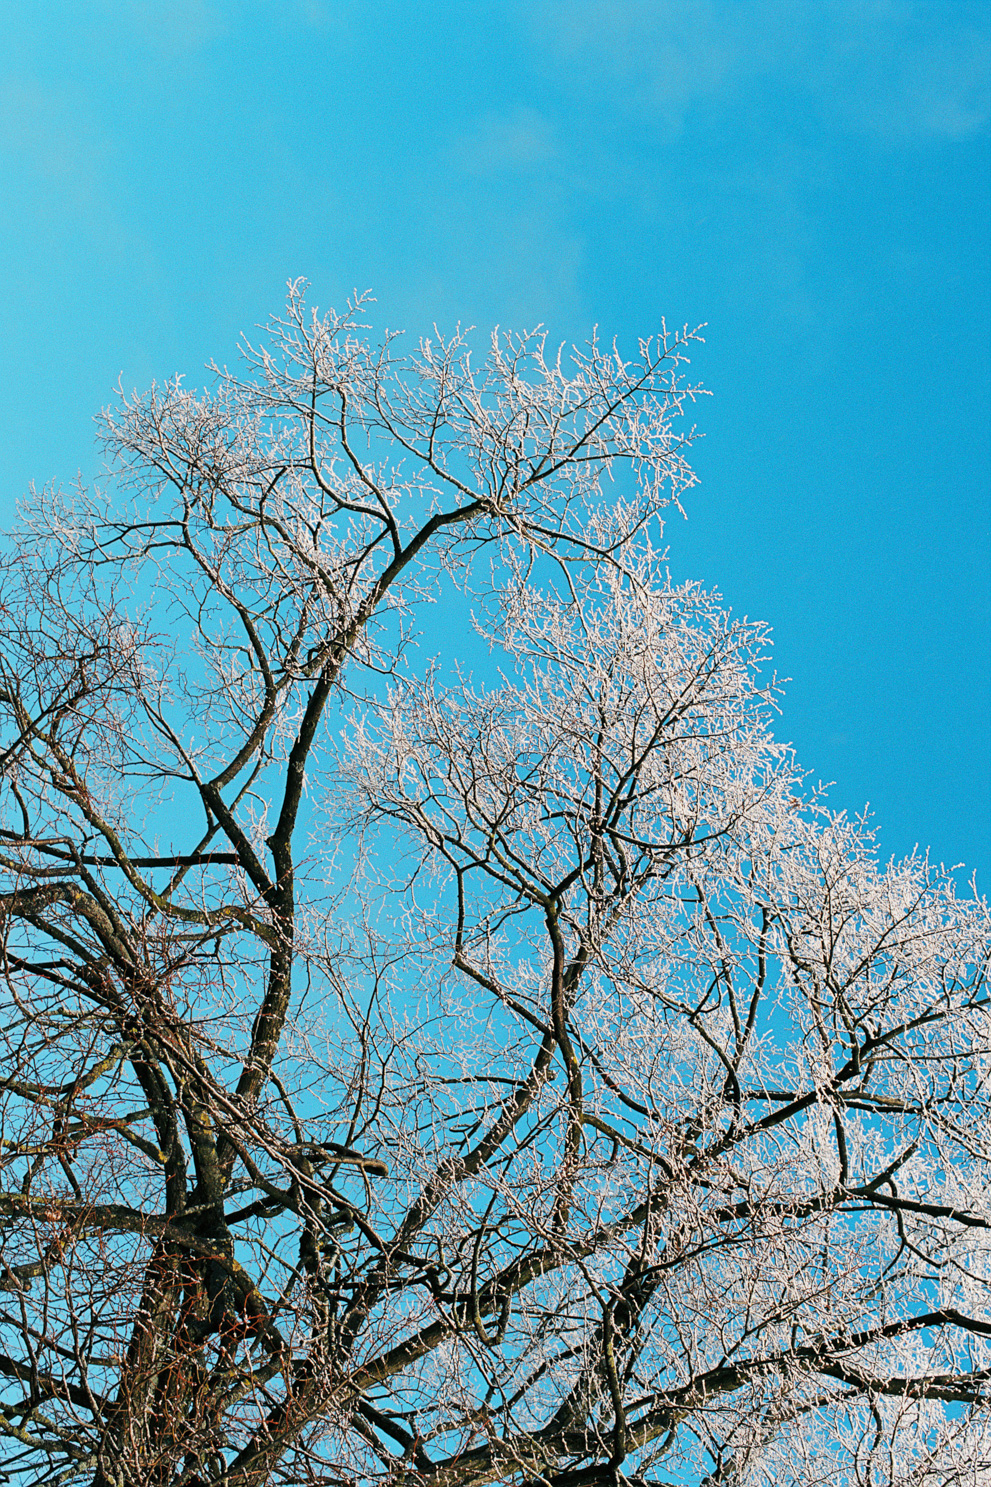 Winter trees against blue sky. Shot on Kodak Ektar 100.